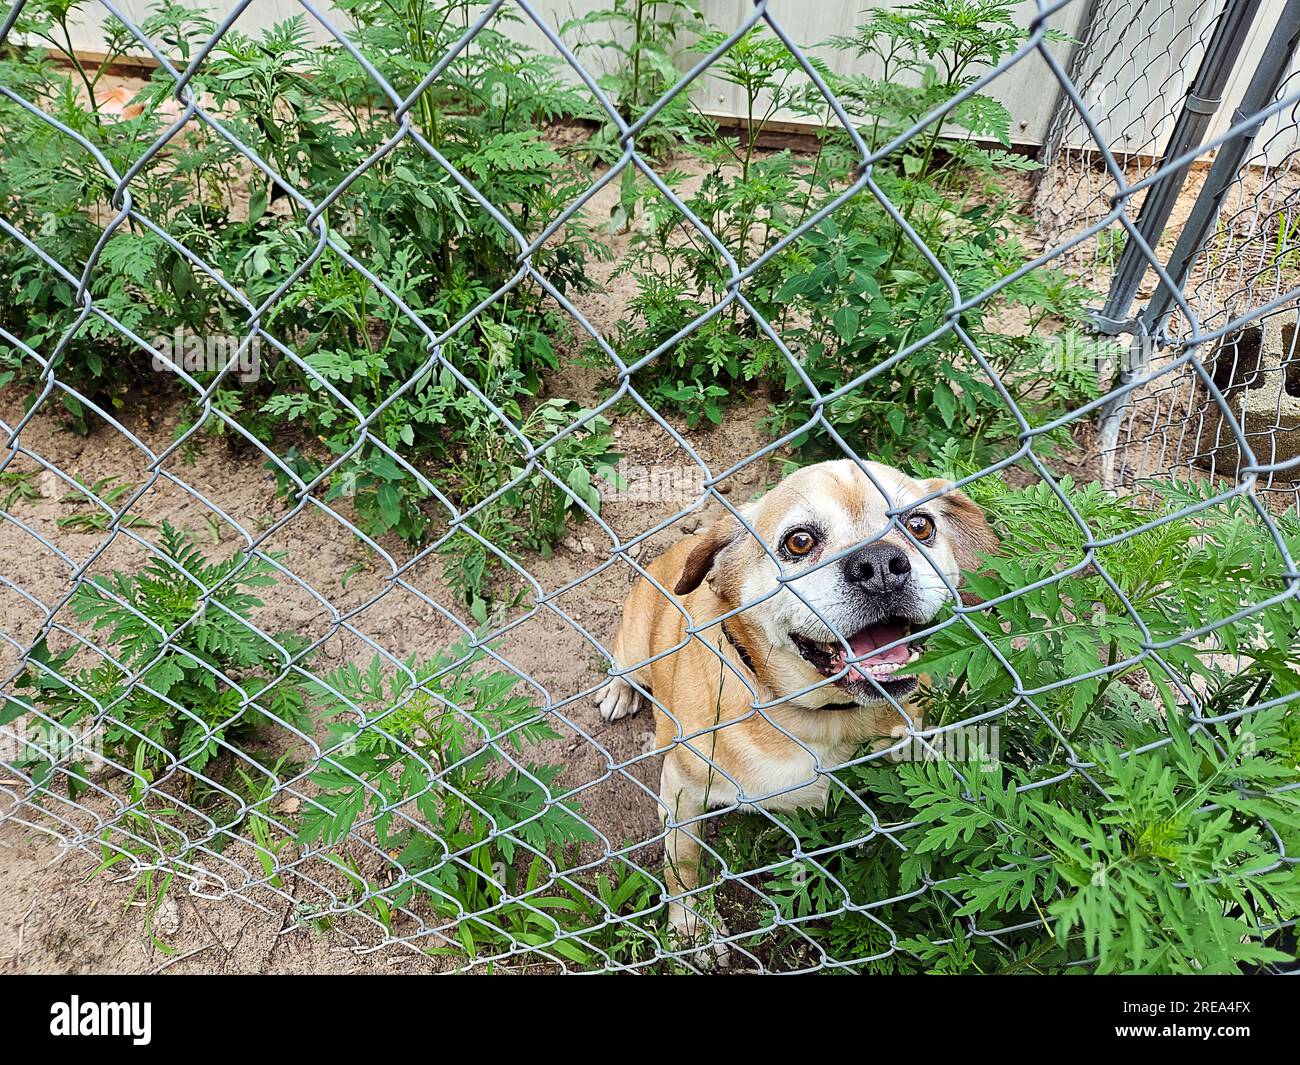 Chien négligé dans un enclos pour chien avec des mauvaises herbes vertes Banque D'Images